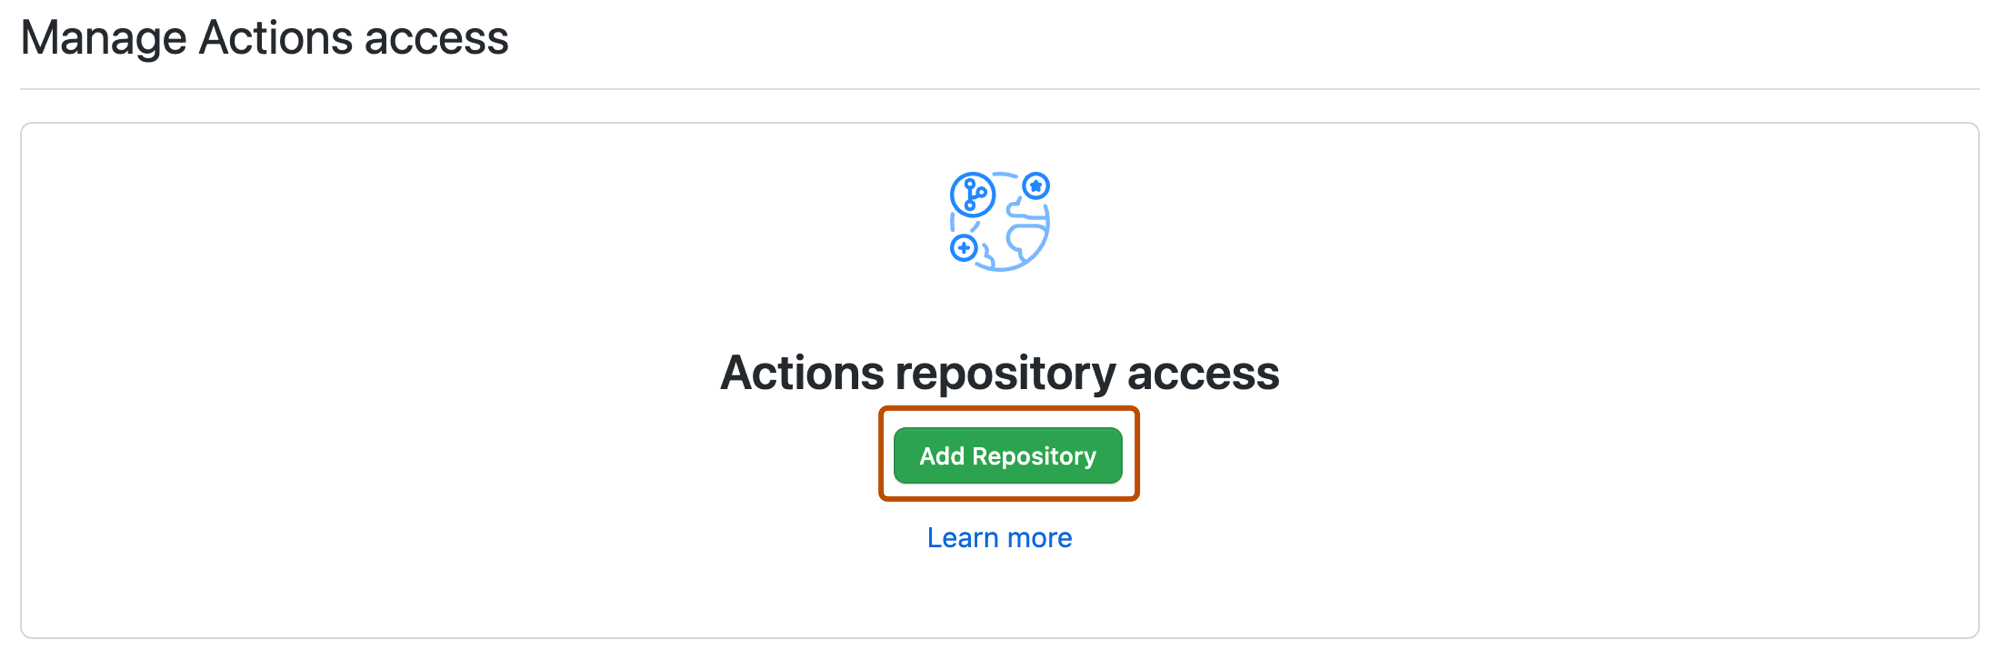 "Add repository" button